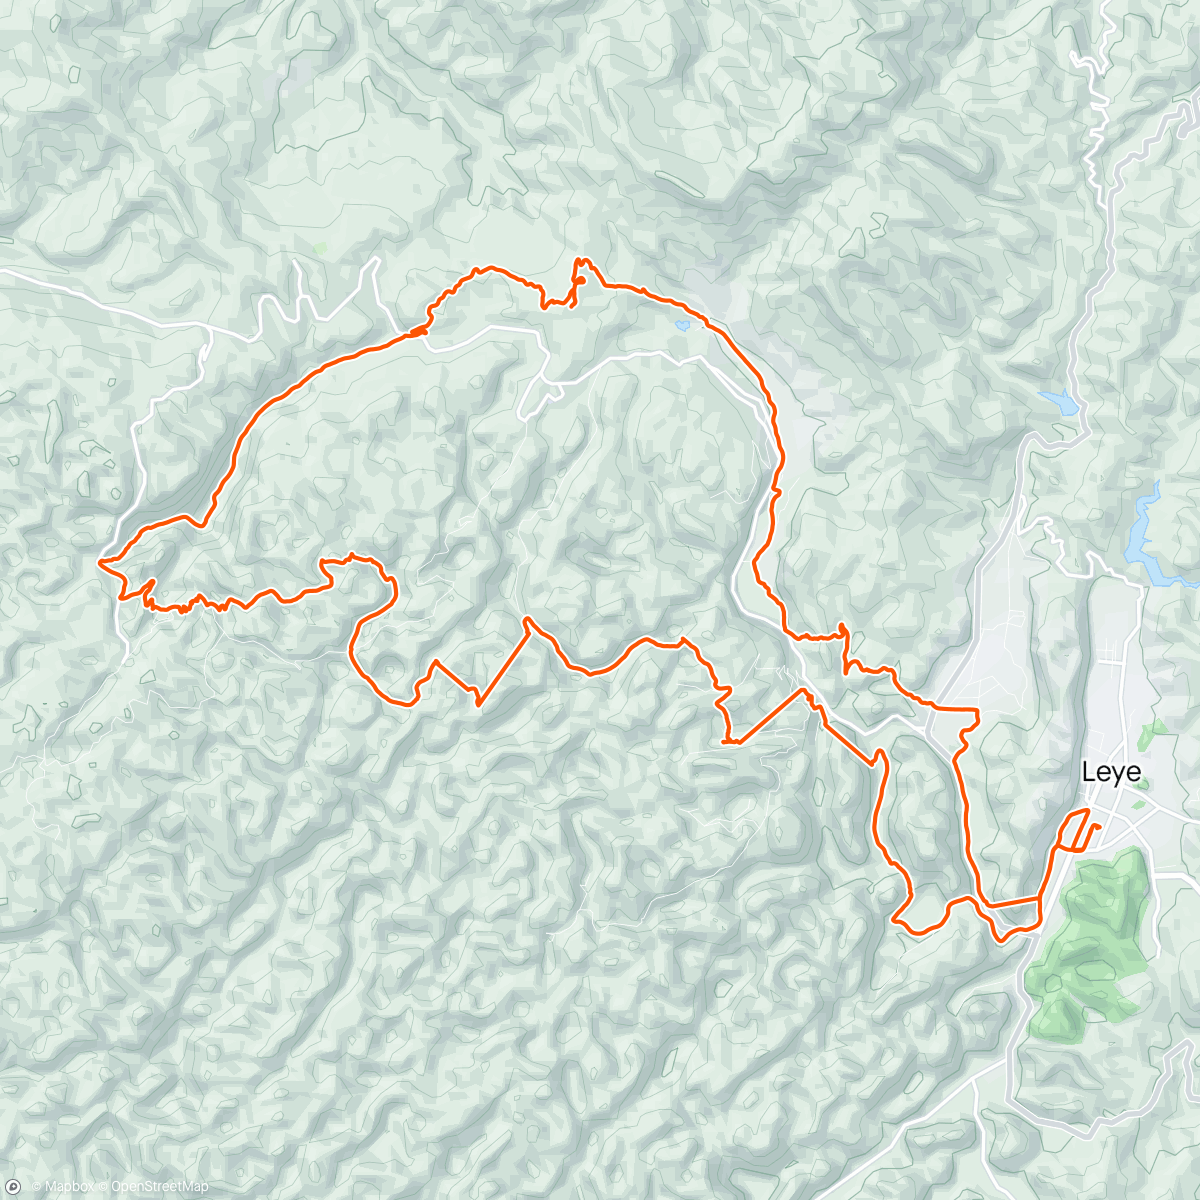 Mappa dell'attività Baise Leye cave trail run